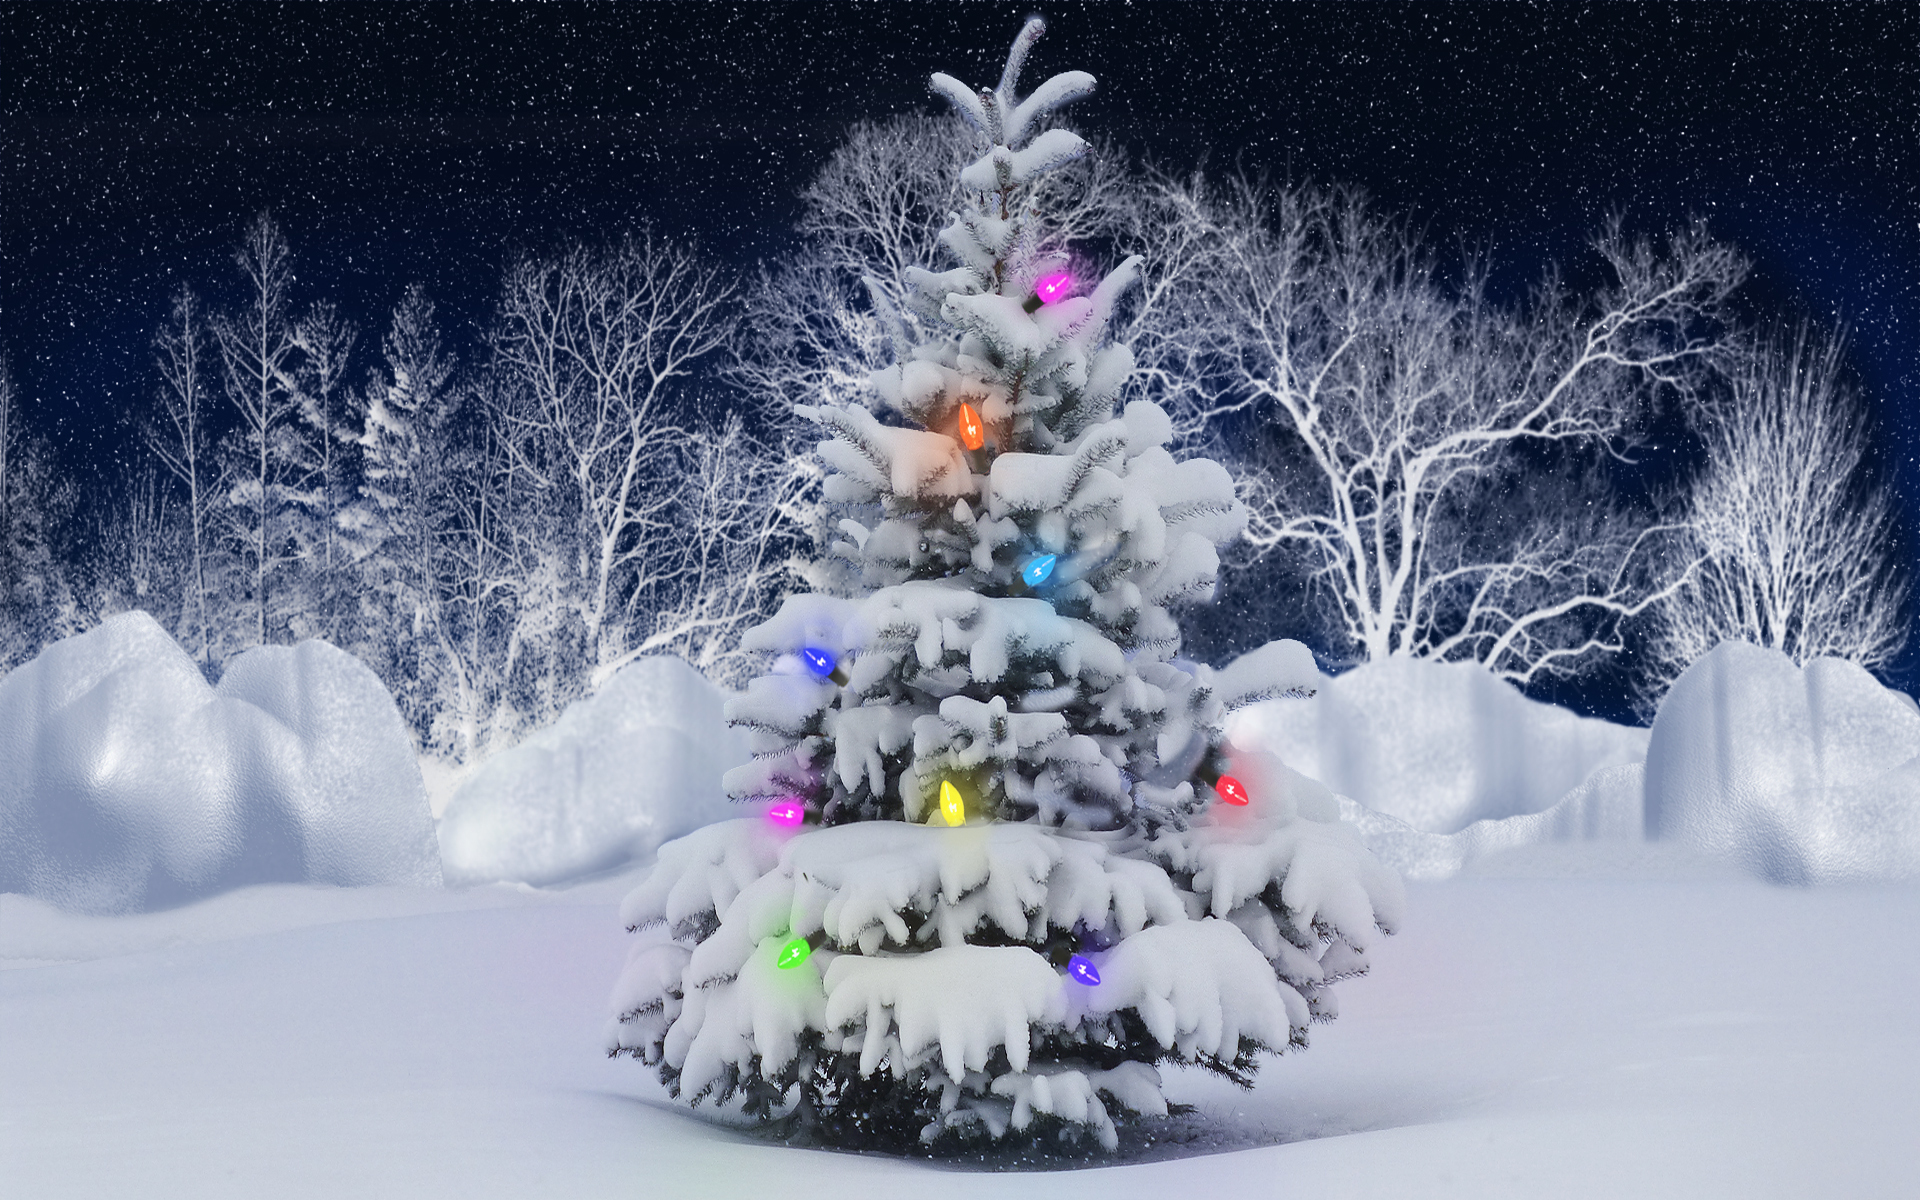 Скачать обои бесплатно Снег, Праздники, Елки, Рождество (Christmas Xmas), Новый Год (New Year) картинка на рабочий стол ПК